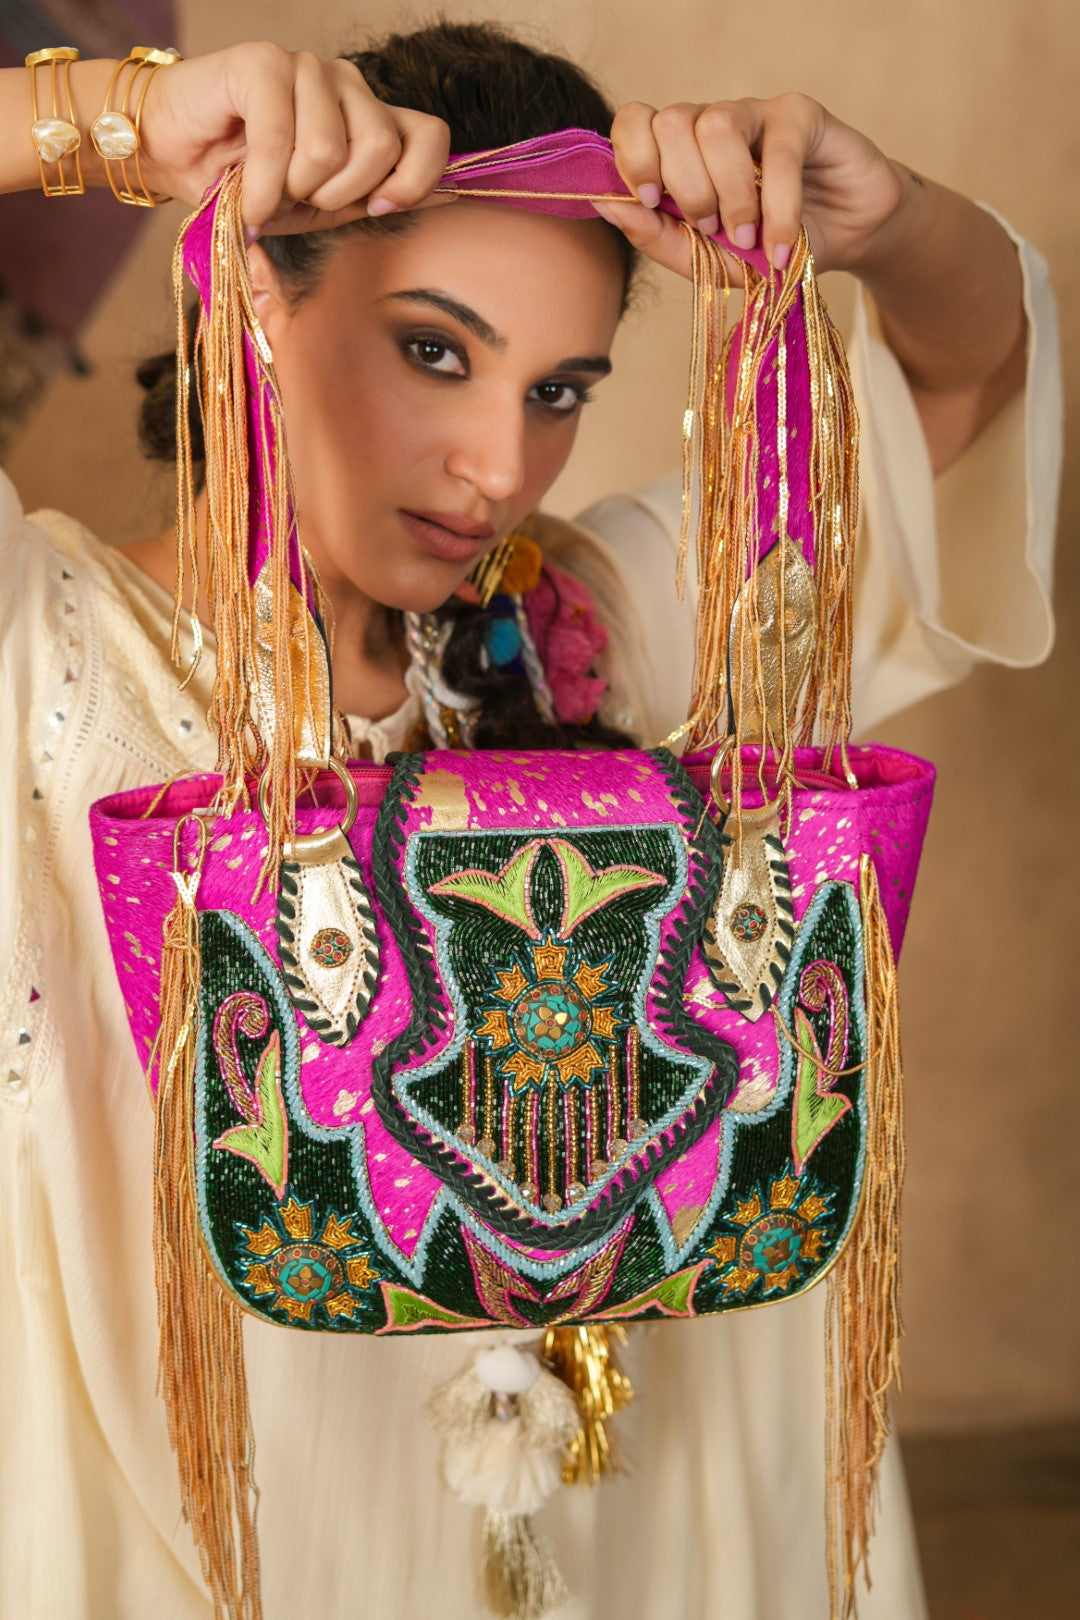 Women Handmade Leather Shoulder Bag With Decorative Sequin Fringe